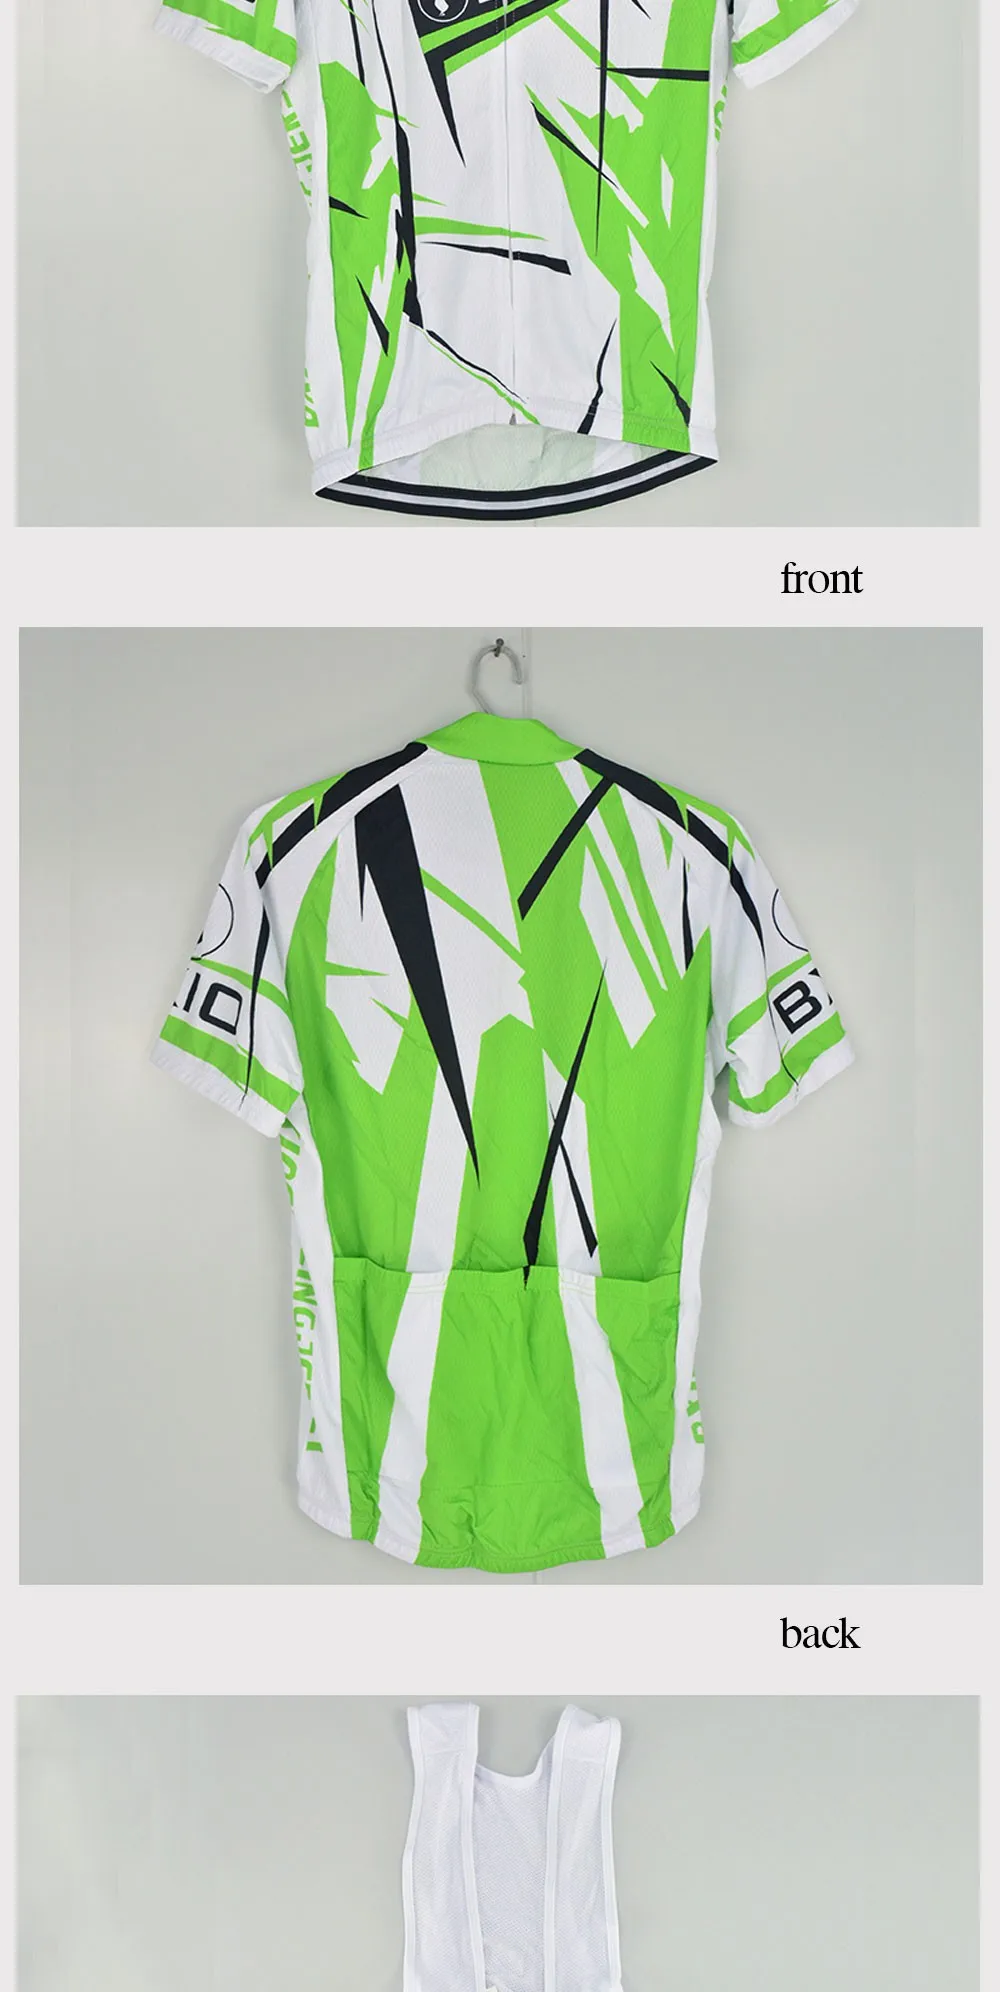 Бренд bxio зеленый дышащий Велоспорт Джерси Наборы Лето ультрафиолет-защита Pro одежда для велоспорта Ropa Ciclismo Hombre BX-031